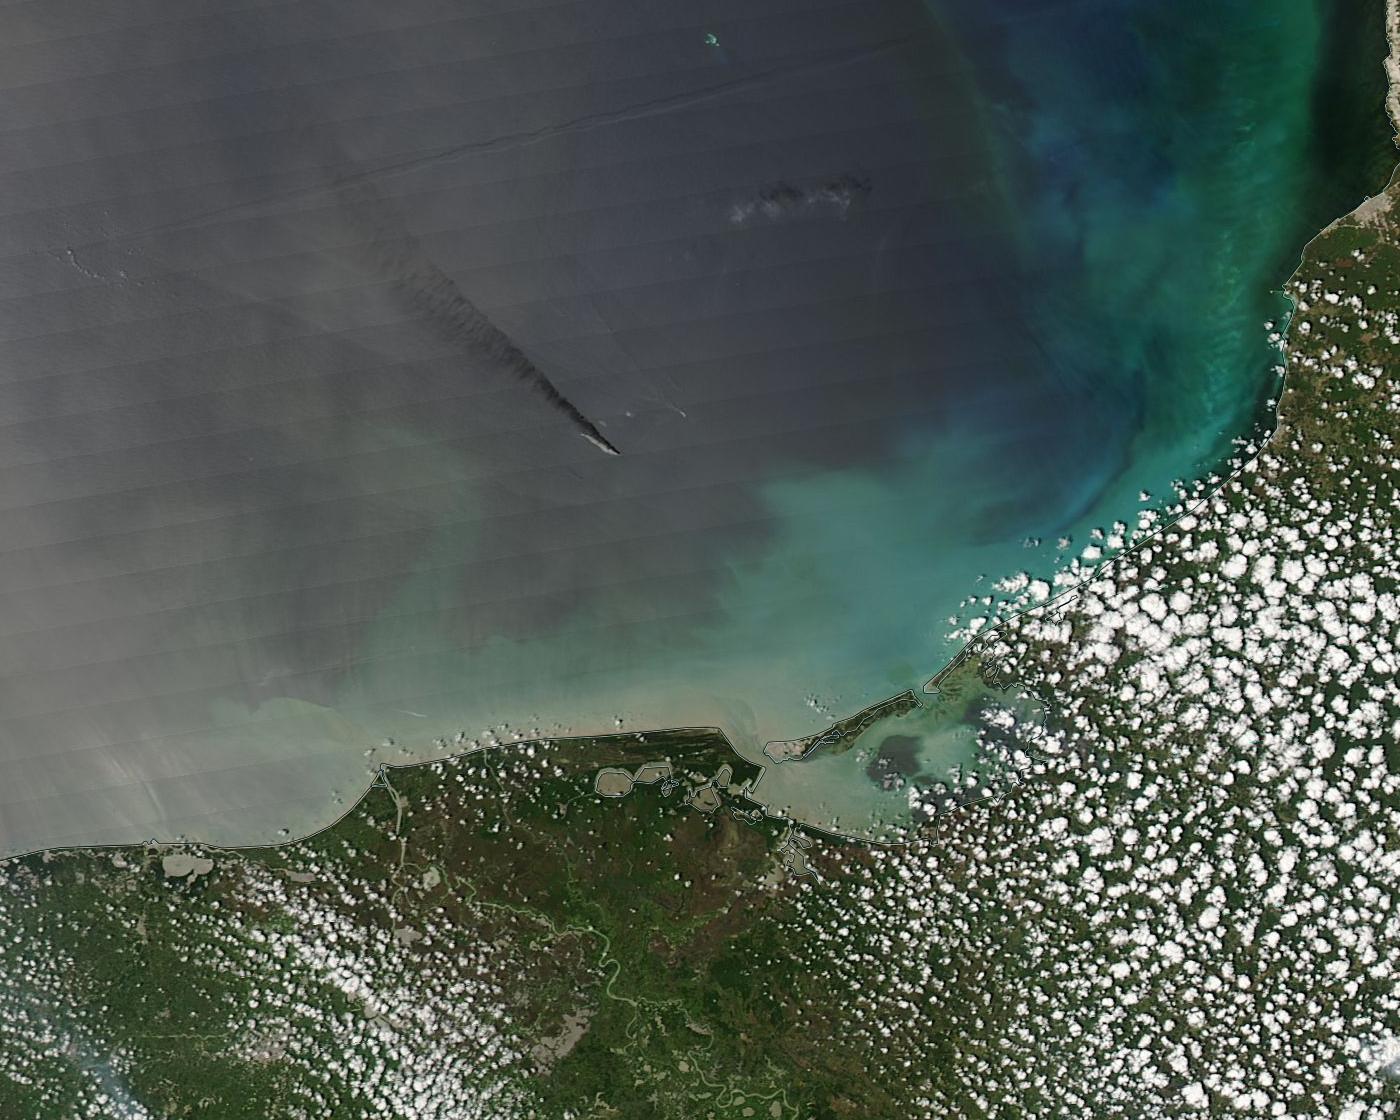 L'explosion de la plate-forme Pemex dans le golfe du Mexique en avril 2015 - Satellite Aqua - MODIS - Oil spill - Incendie - Abkatun